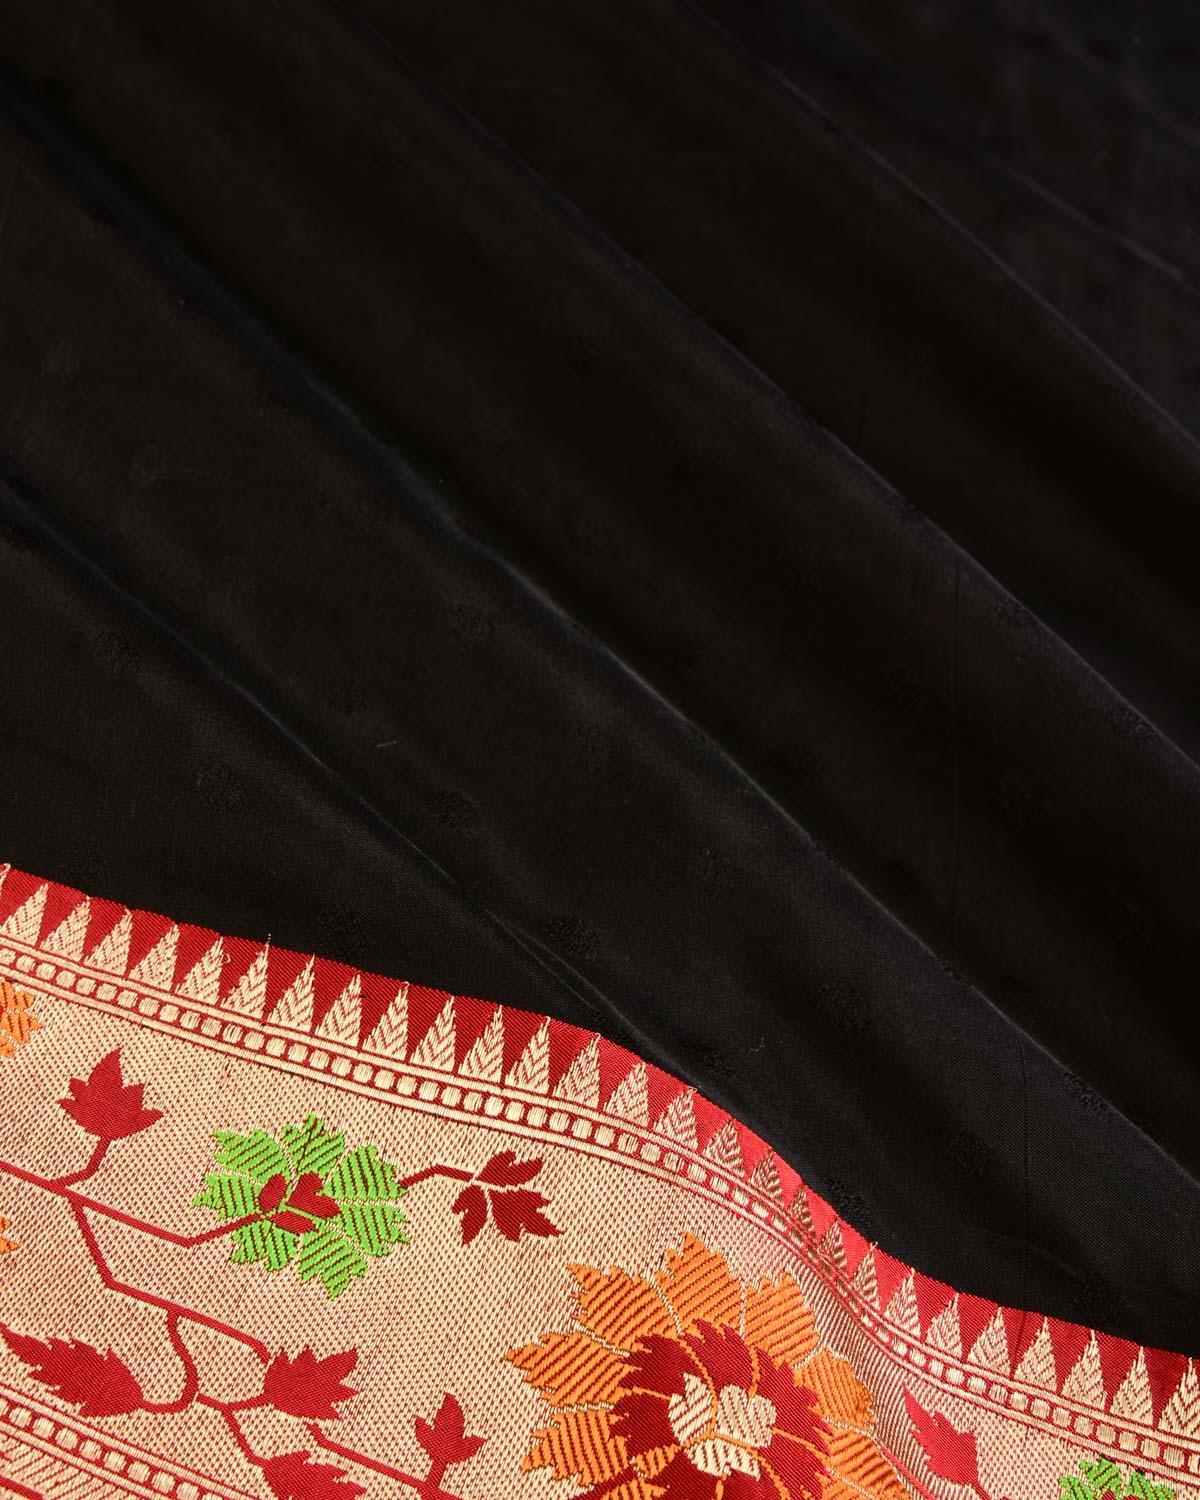 Black Banarasi Resham Buti Tanchoi Brocade Handwoven Katan Silk Saree - By HolyWeaves, Benares